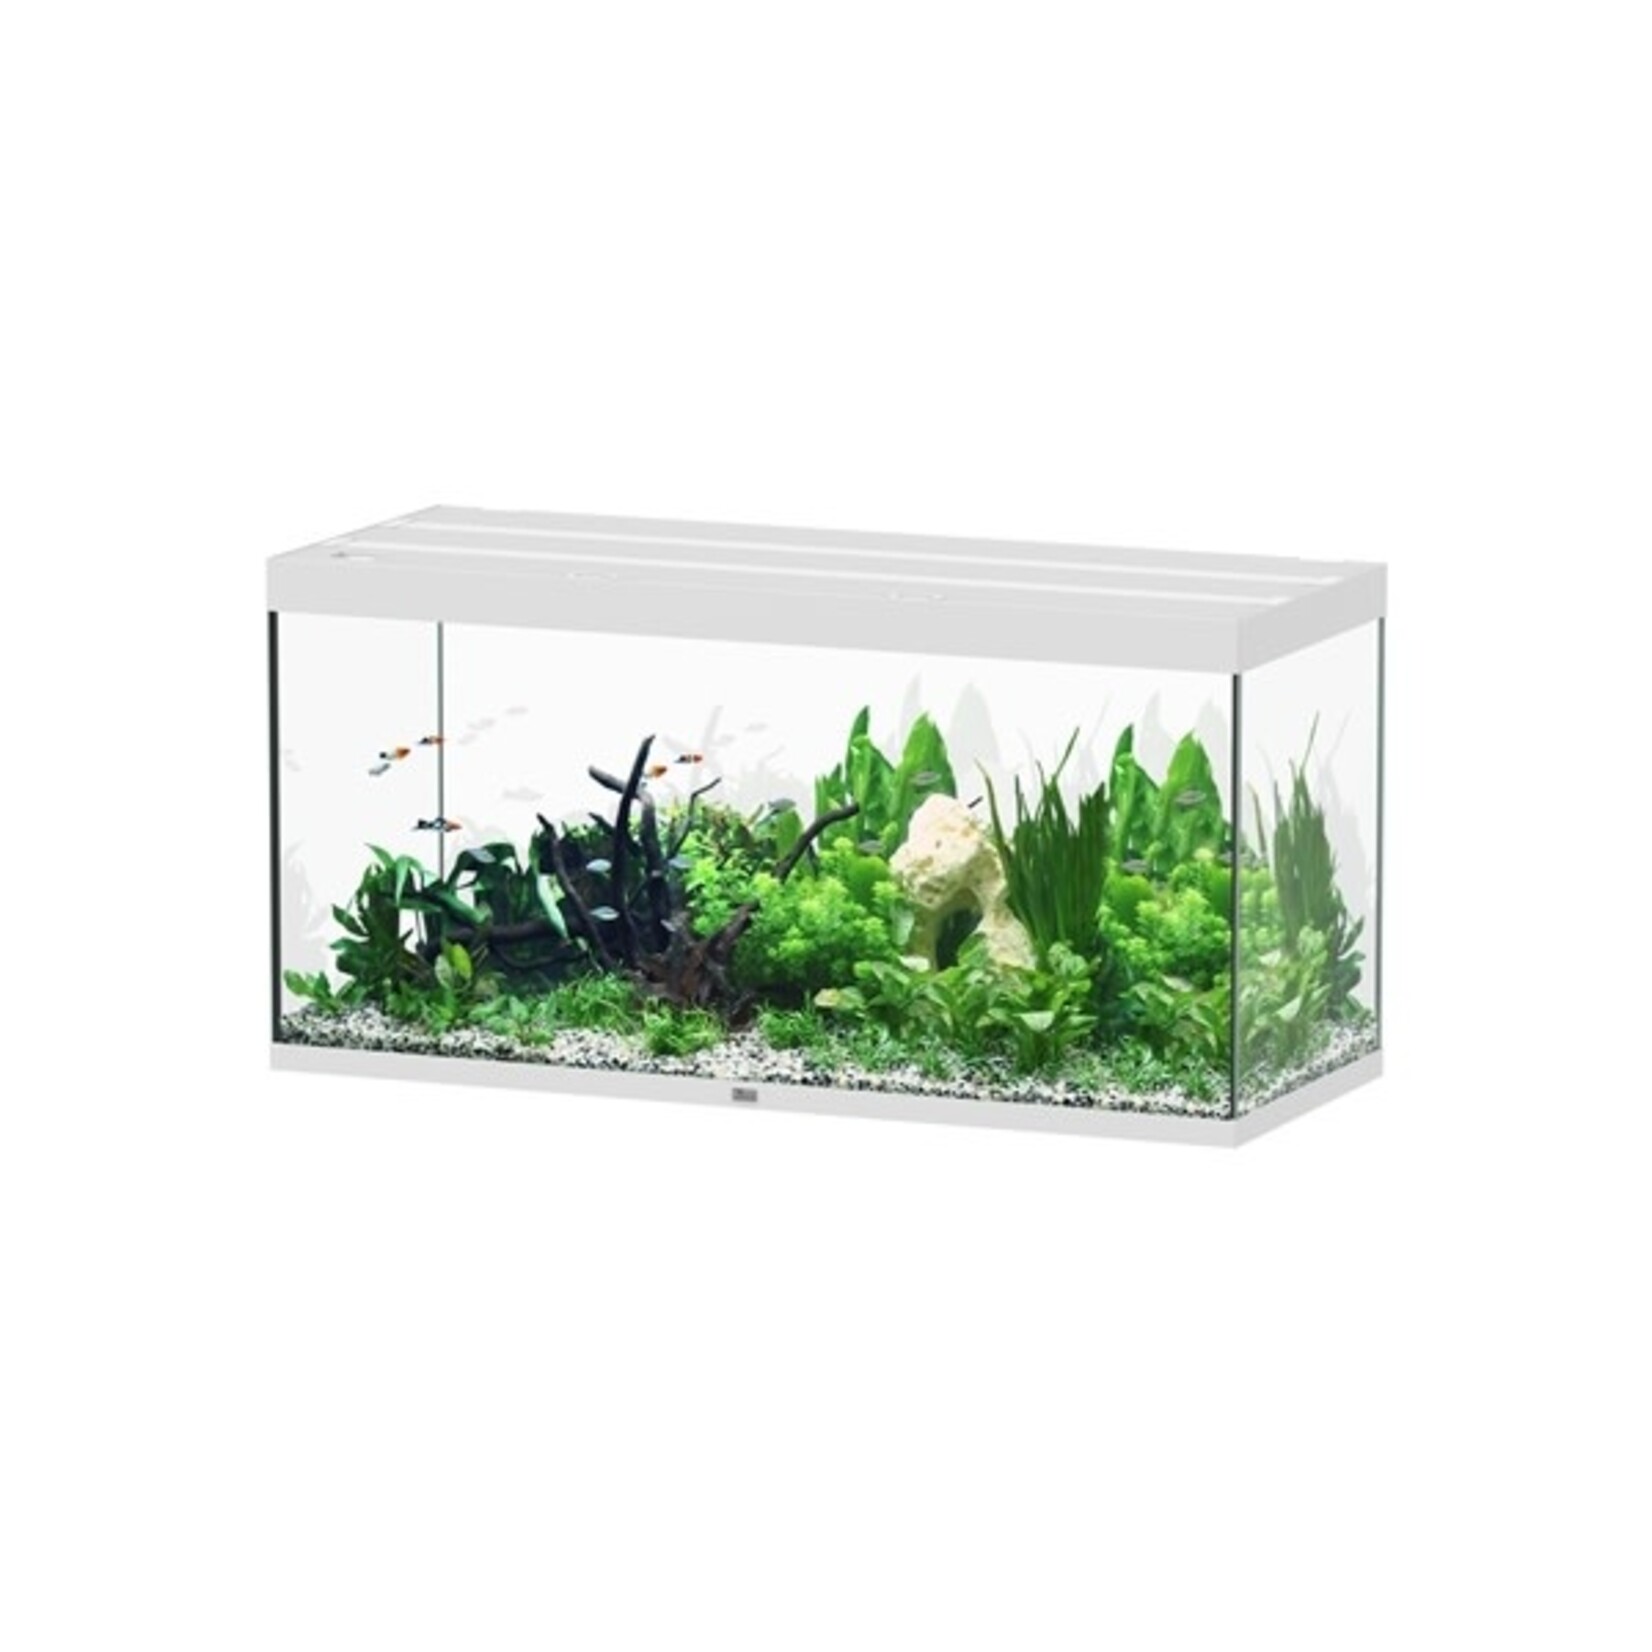 Aquatlantis Aquarium sublime 150x60 cm wit hg-064